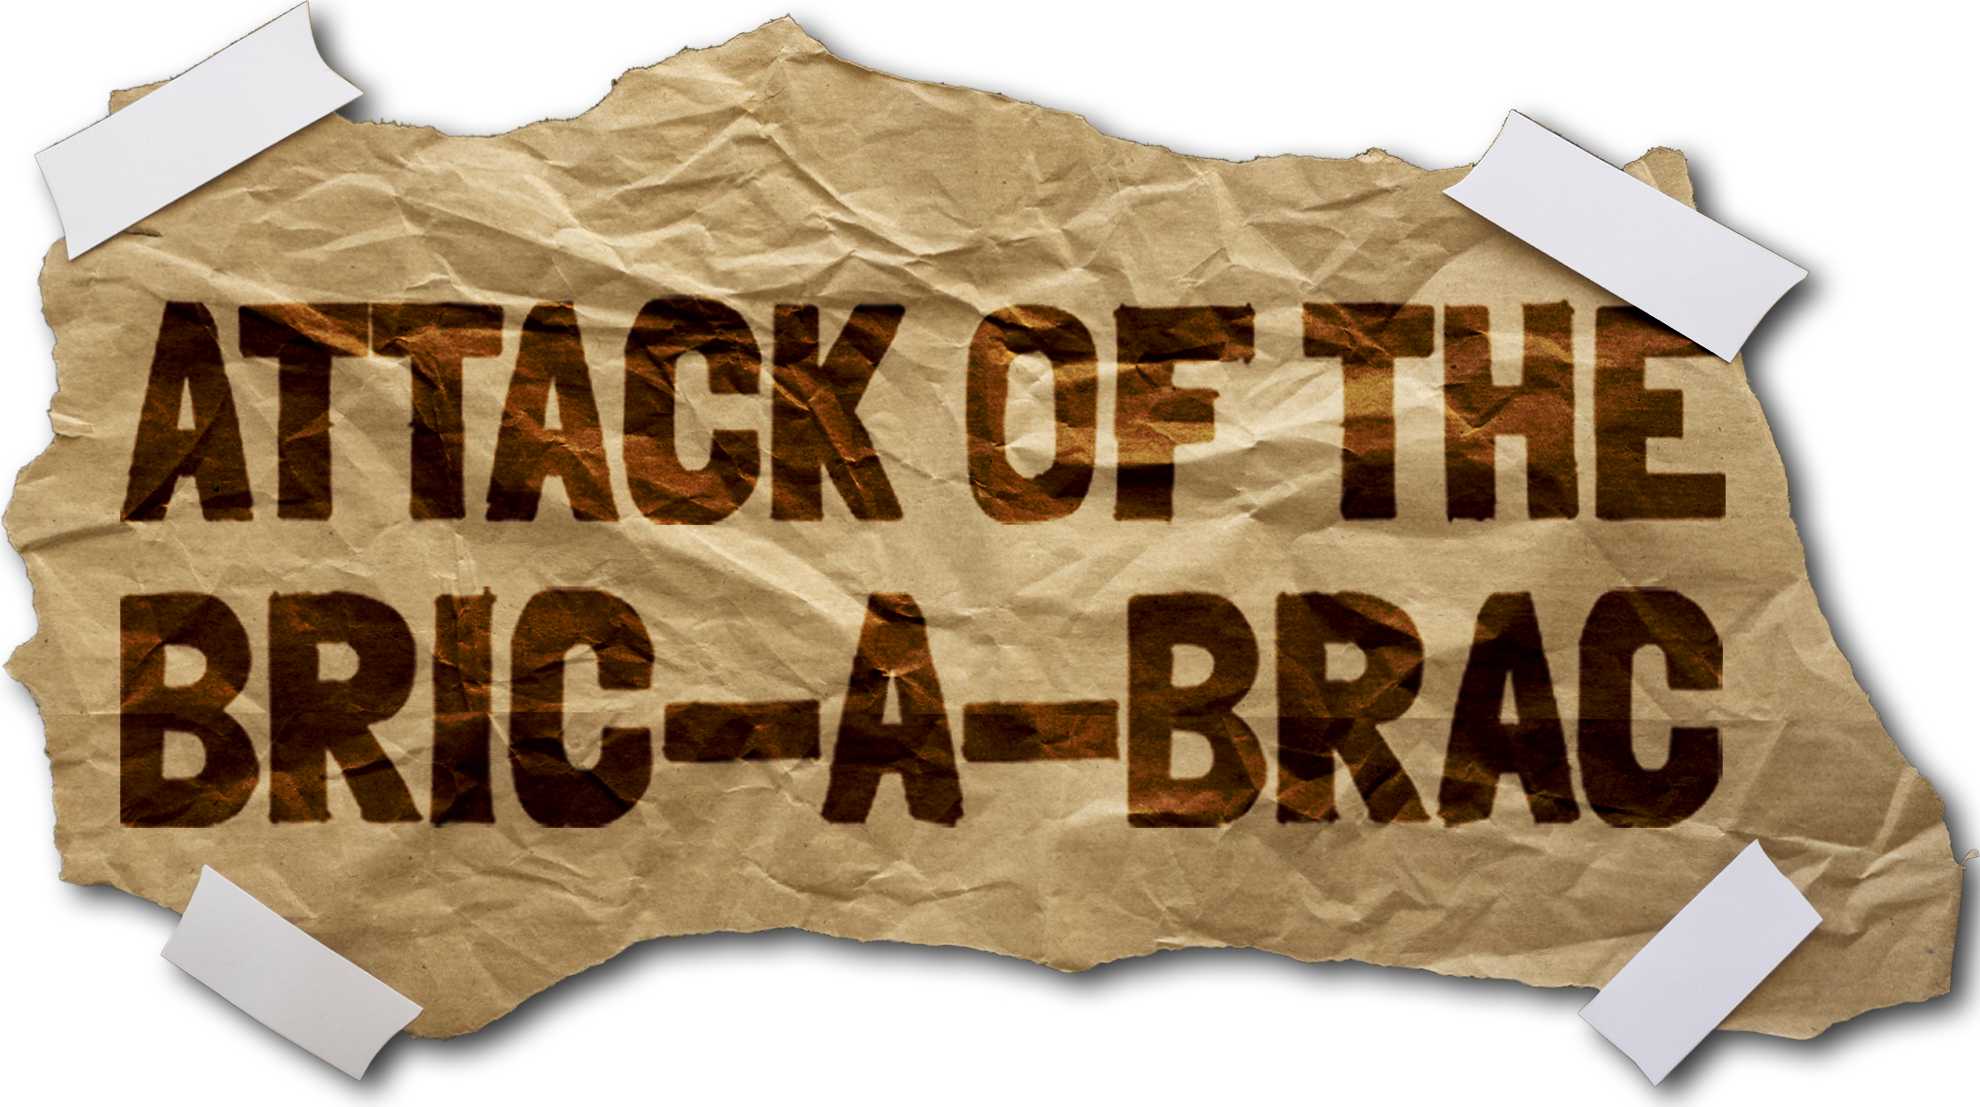 Attack of the Bric-a-Brac